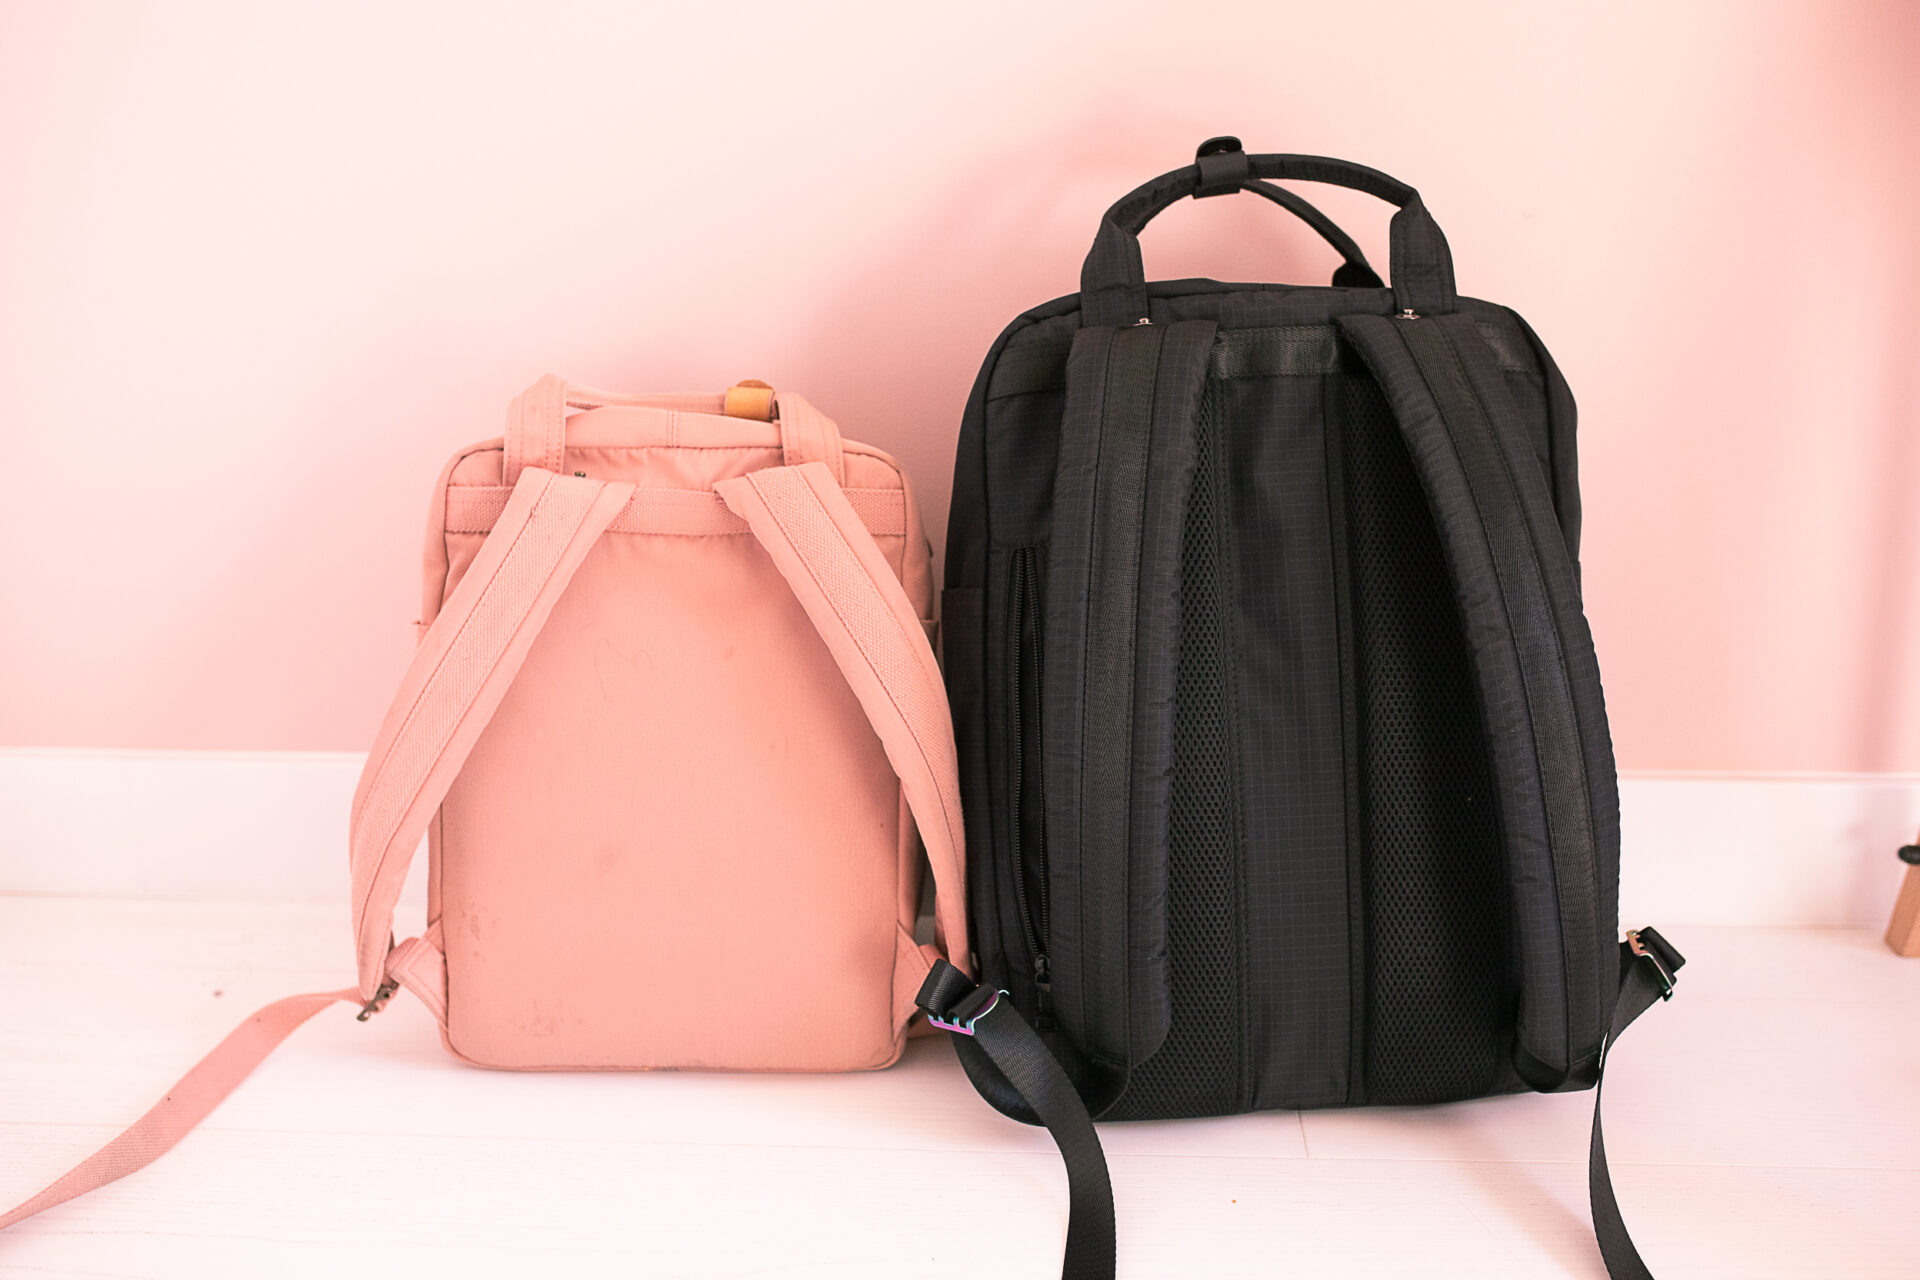 plecaki szkolne - różowy Dougnat 16l i czarny 18l - porównanie